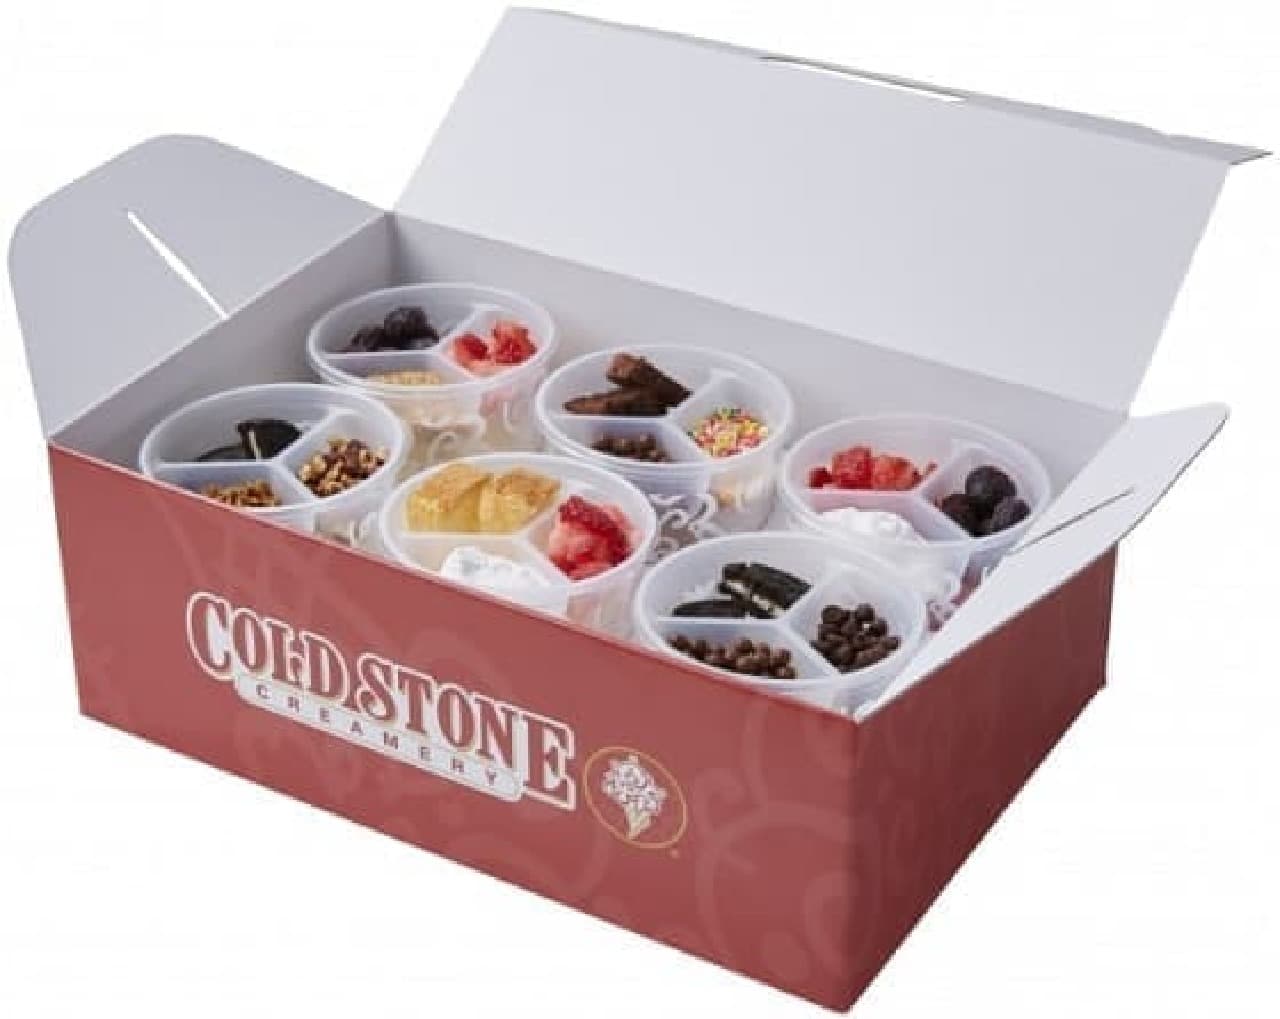 Cold Stone Creamery Happy Share Box